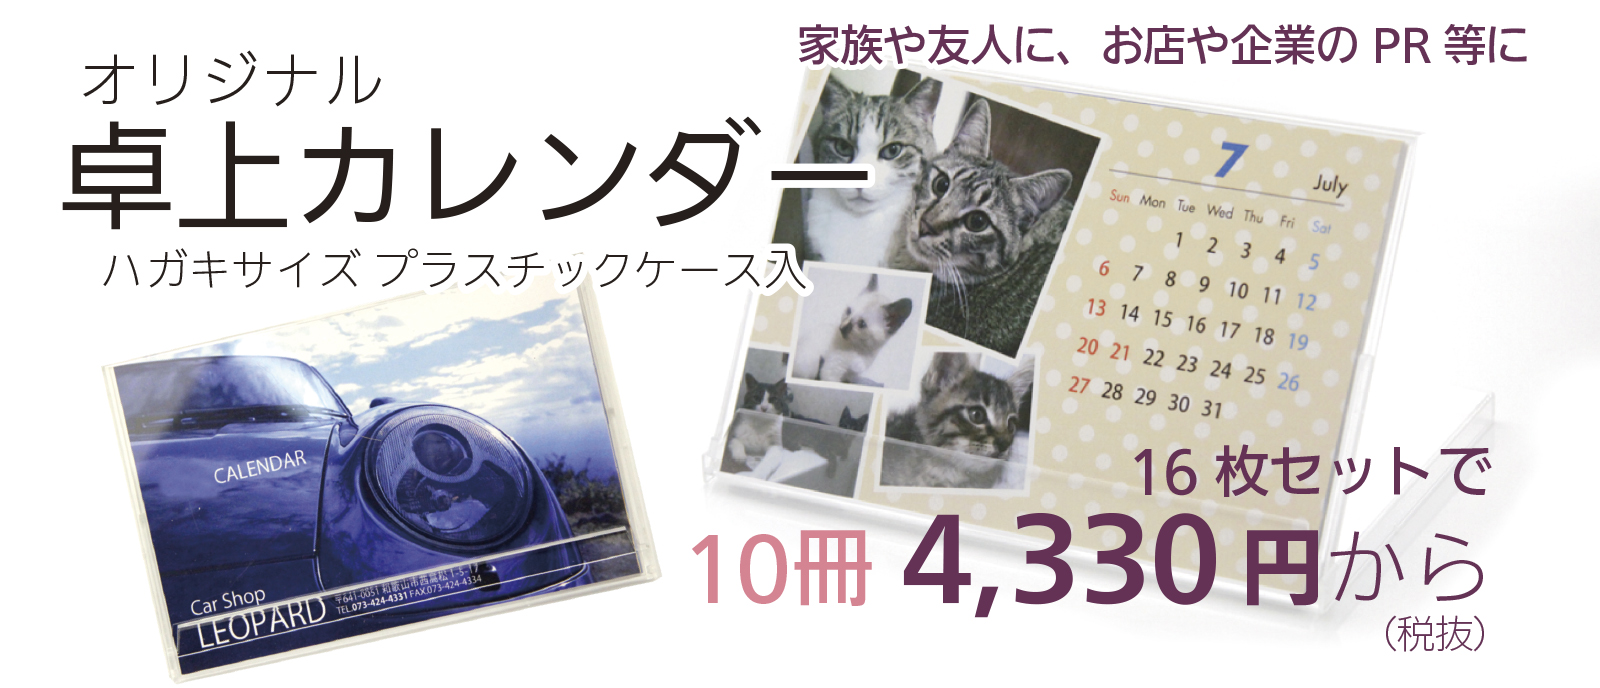 オリジナル卓上カレンダー印刷(はがきサイズ)のご購入はこちら　藤井印刷